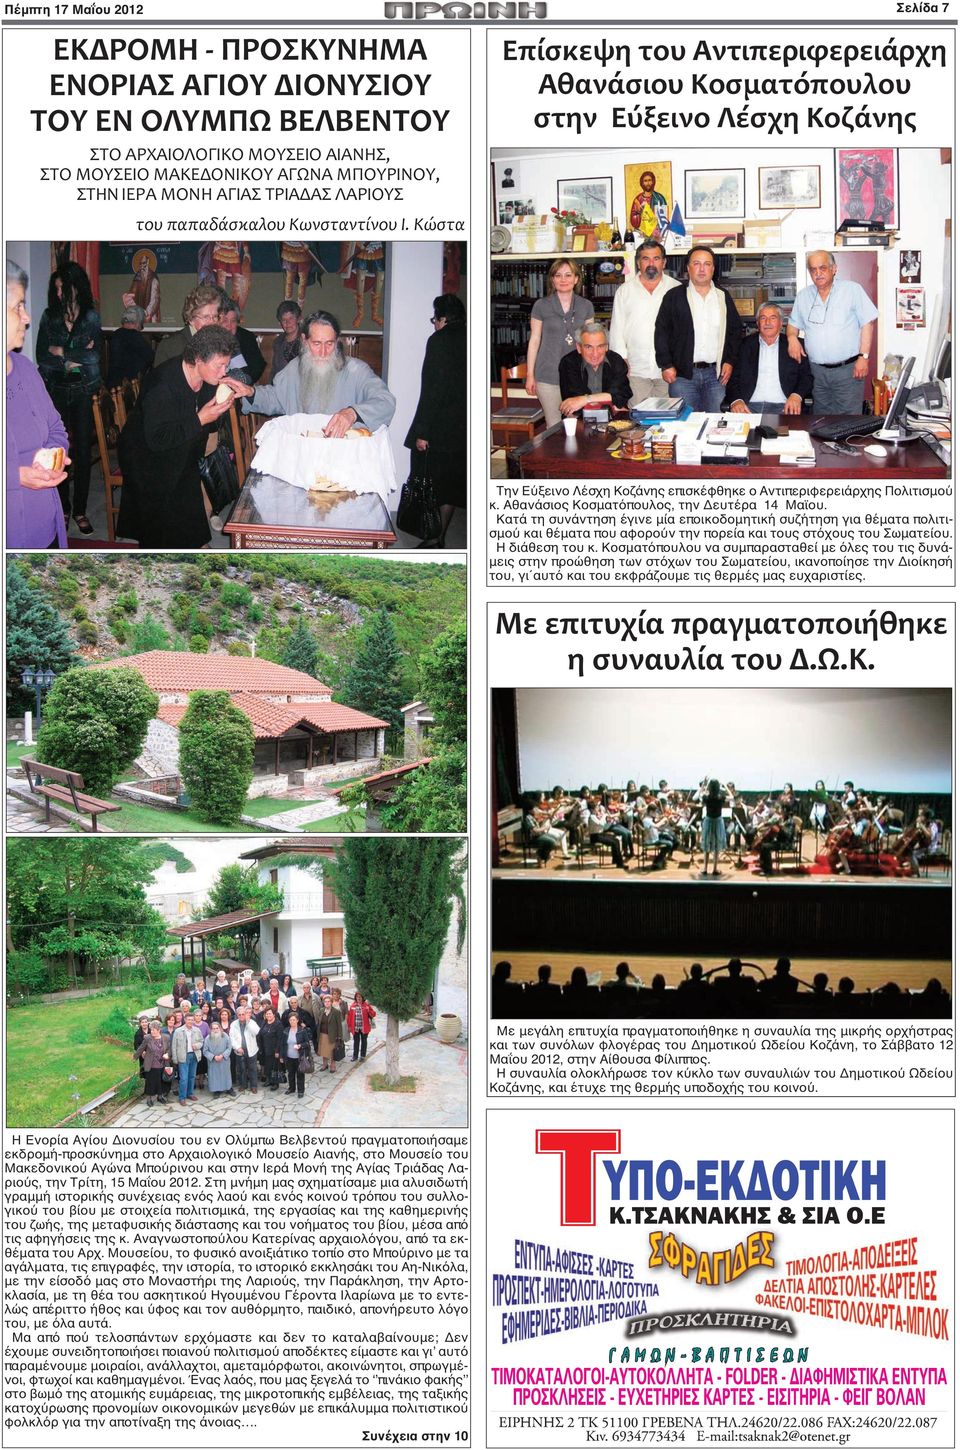 Κώστα Επίσκεψη του Αντιπεριφερειάρχη Αθανάσιου Κοσματόπουλου στην Εύξεινο Λέσχη Κοζάνης Την Εύξεινο Λέσχη Κοζάνης επισκέφθηκε ο Αντιπεριφερειάρχης Πολιτισμού κ.